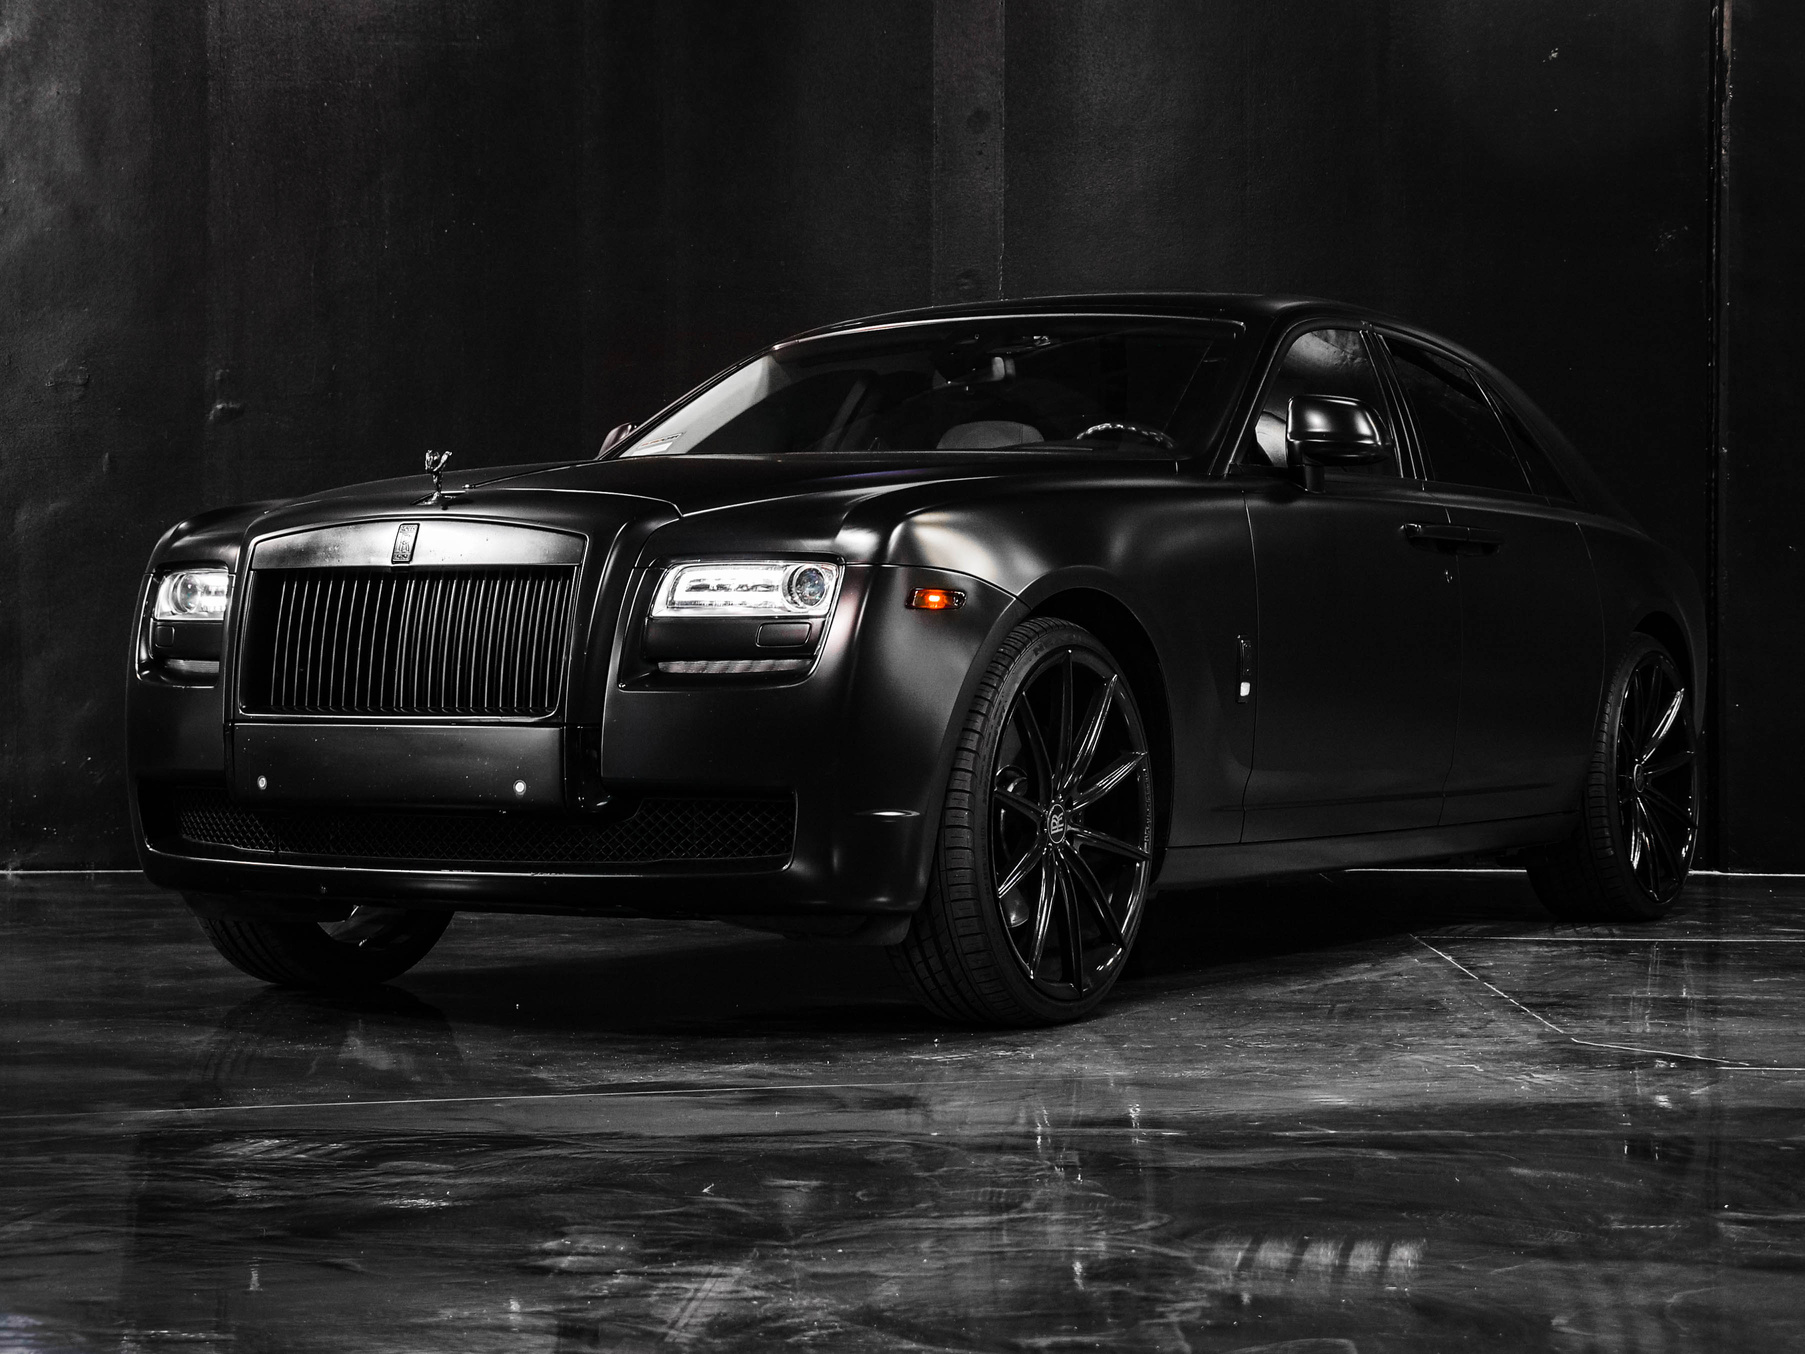 Black Luxury Car in Showroom